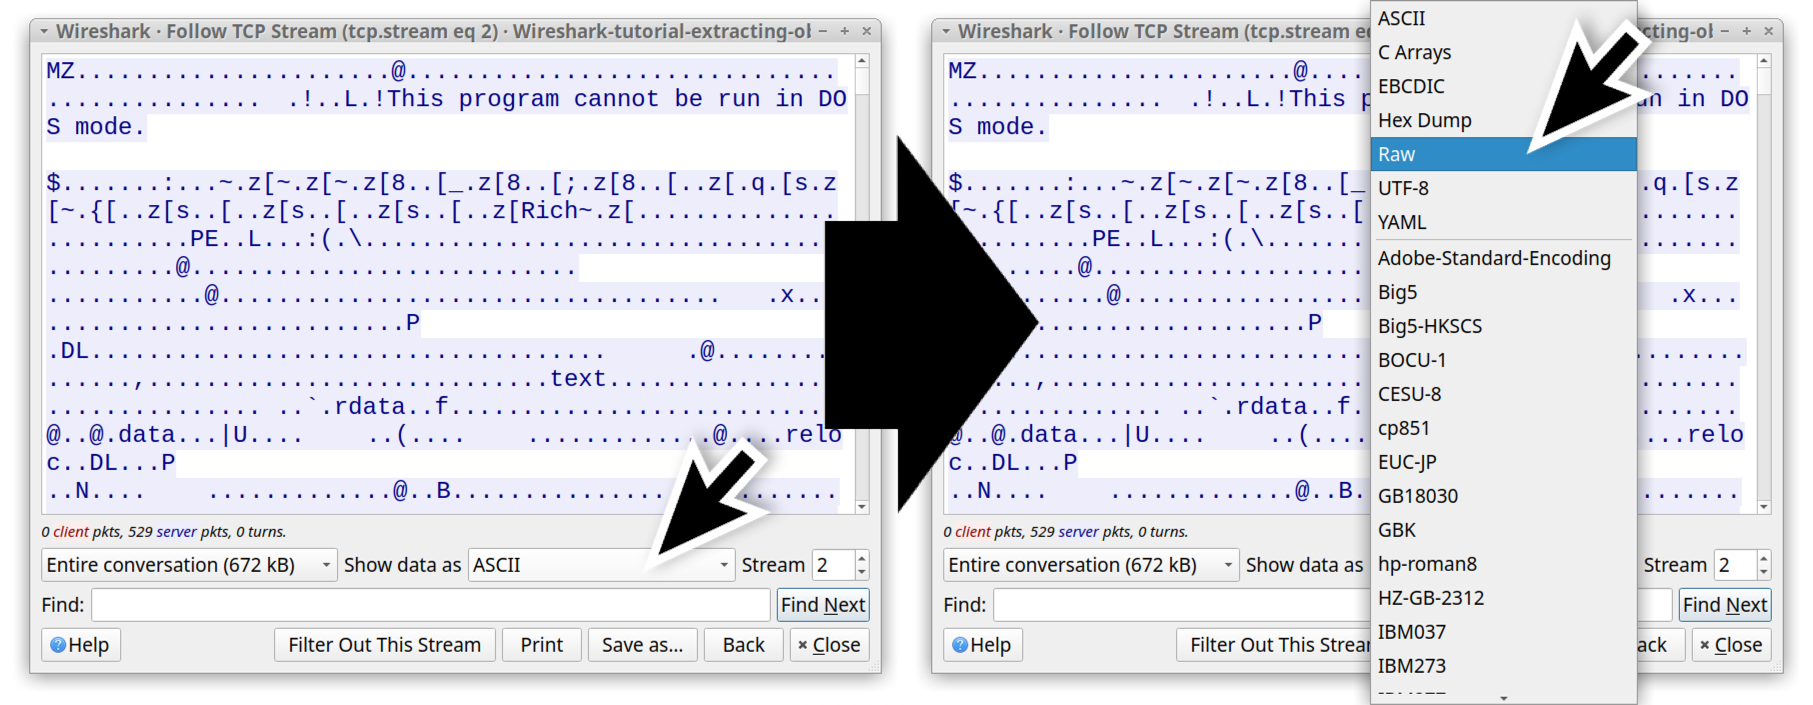 画像 21 は、同じ 2 つの TCP ストリーム ウィンドウを並べて表示したスクリーンショットです。左側のウィンドウでは、黒い矢印が [Show data as (としてデータを表示)] ドロップダウン メニューで「ASCII」を指しています。べつの黒い矢印が左ウィンドウから右ウィンドウに伸びていて、この右ウィンドウでは、同じドロップダウン メニューから [Raw (Raw (無加工) 形式)] が選ばれています。 